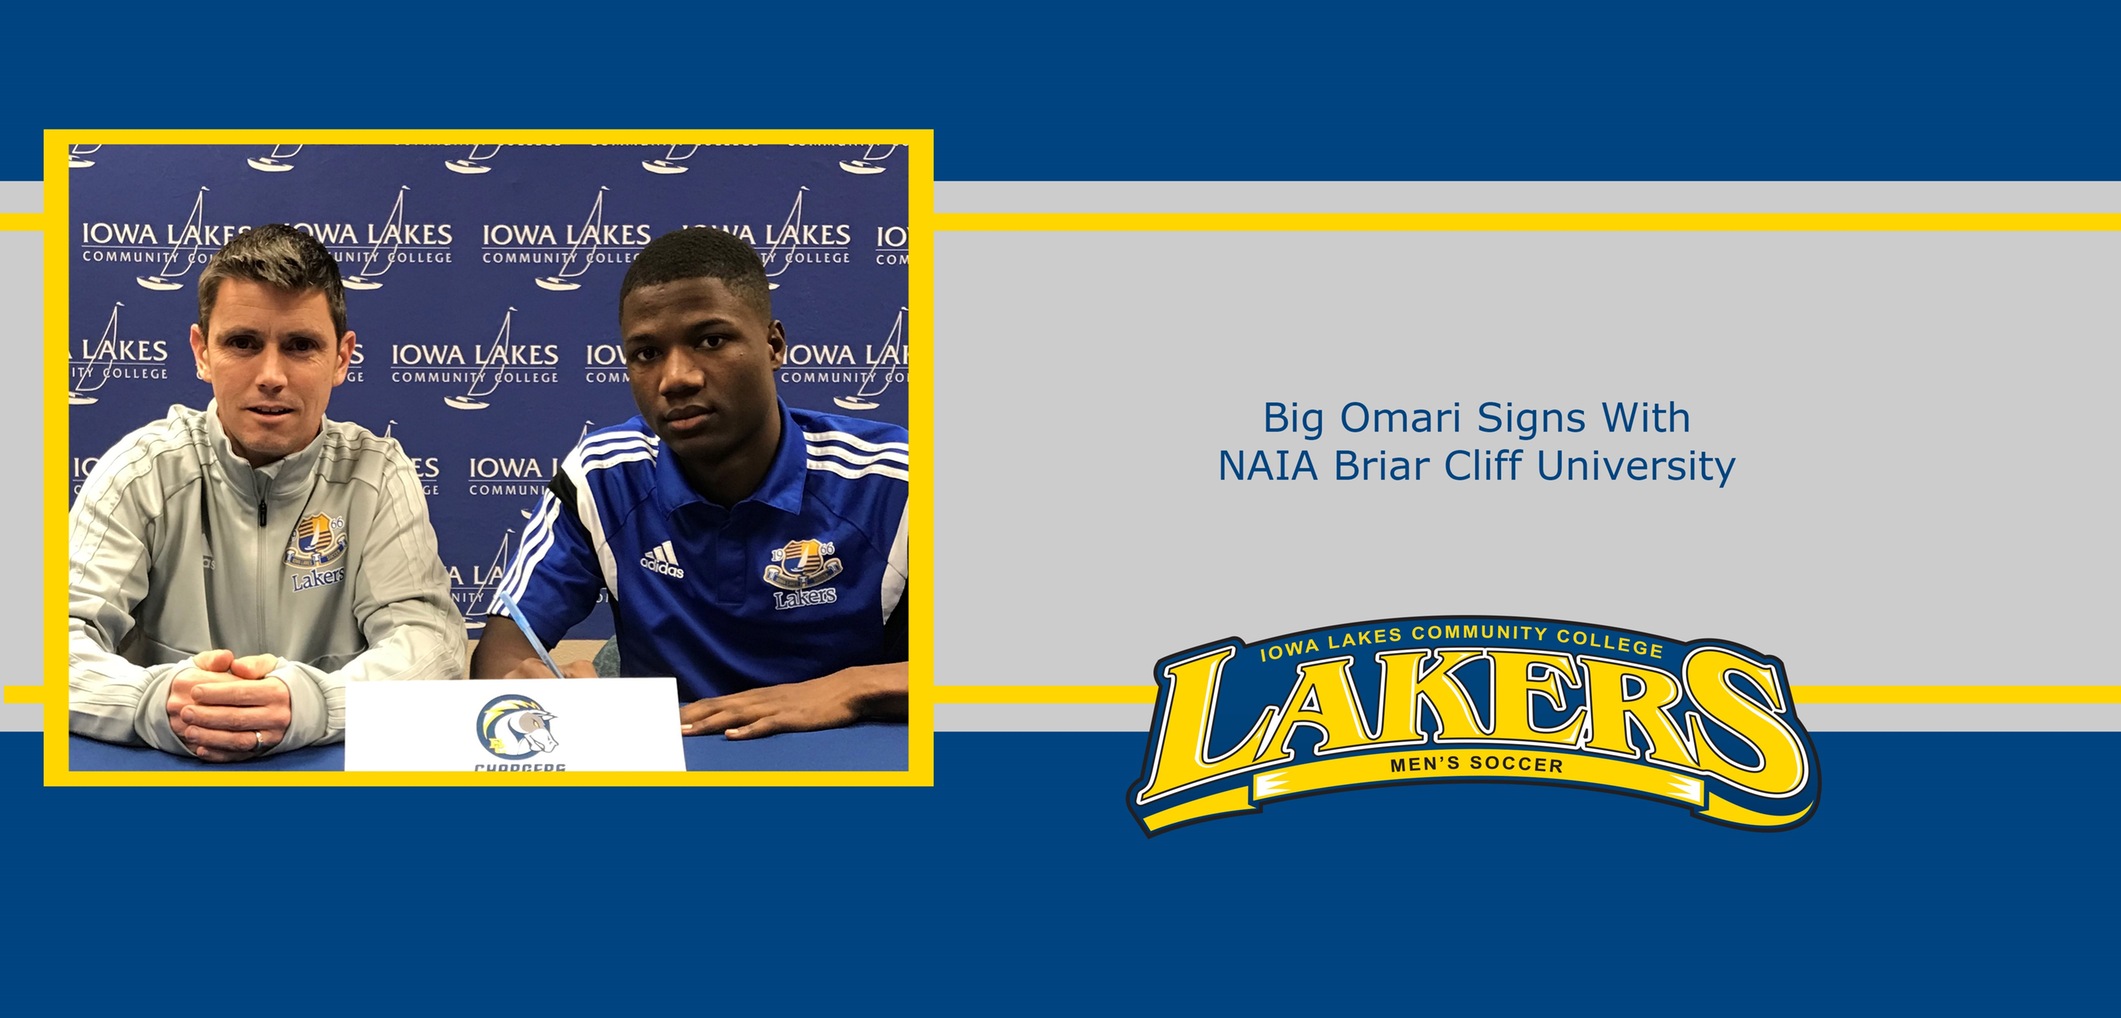 Big Omari signs with NAIA Briar Cliff University